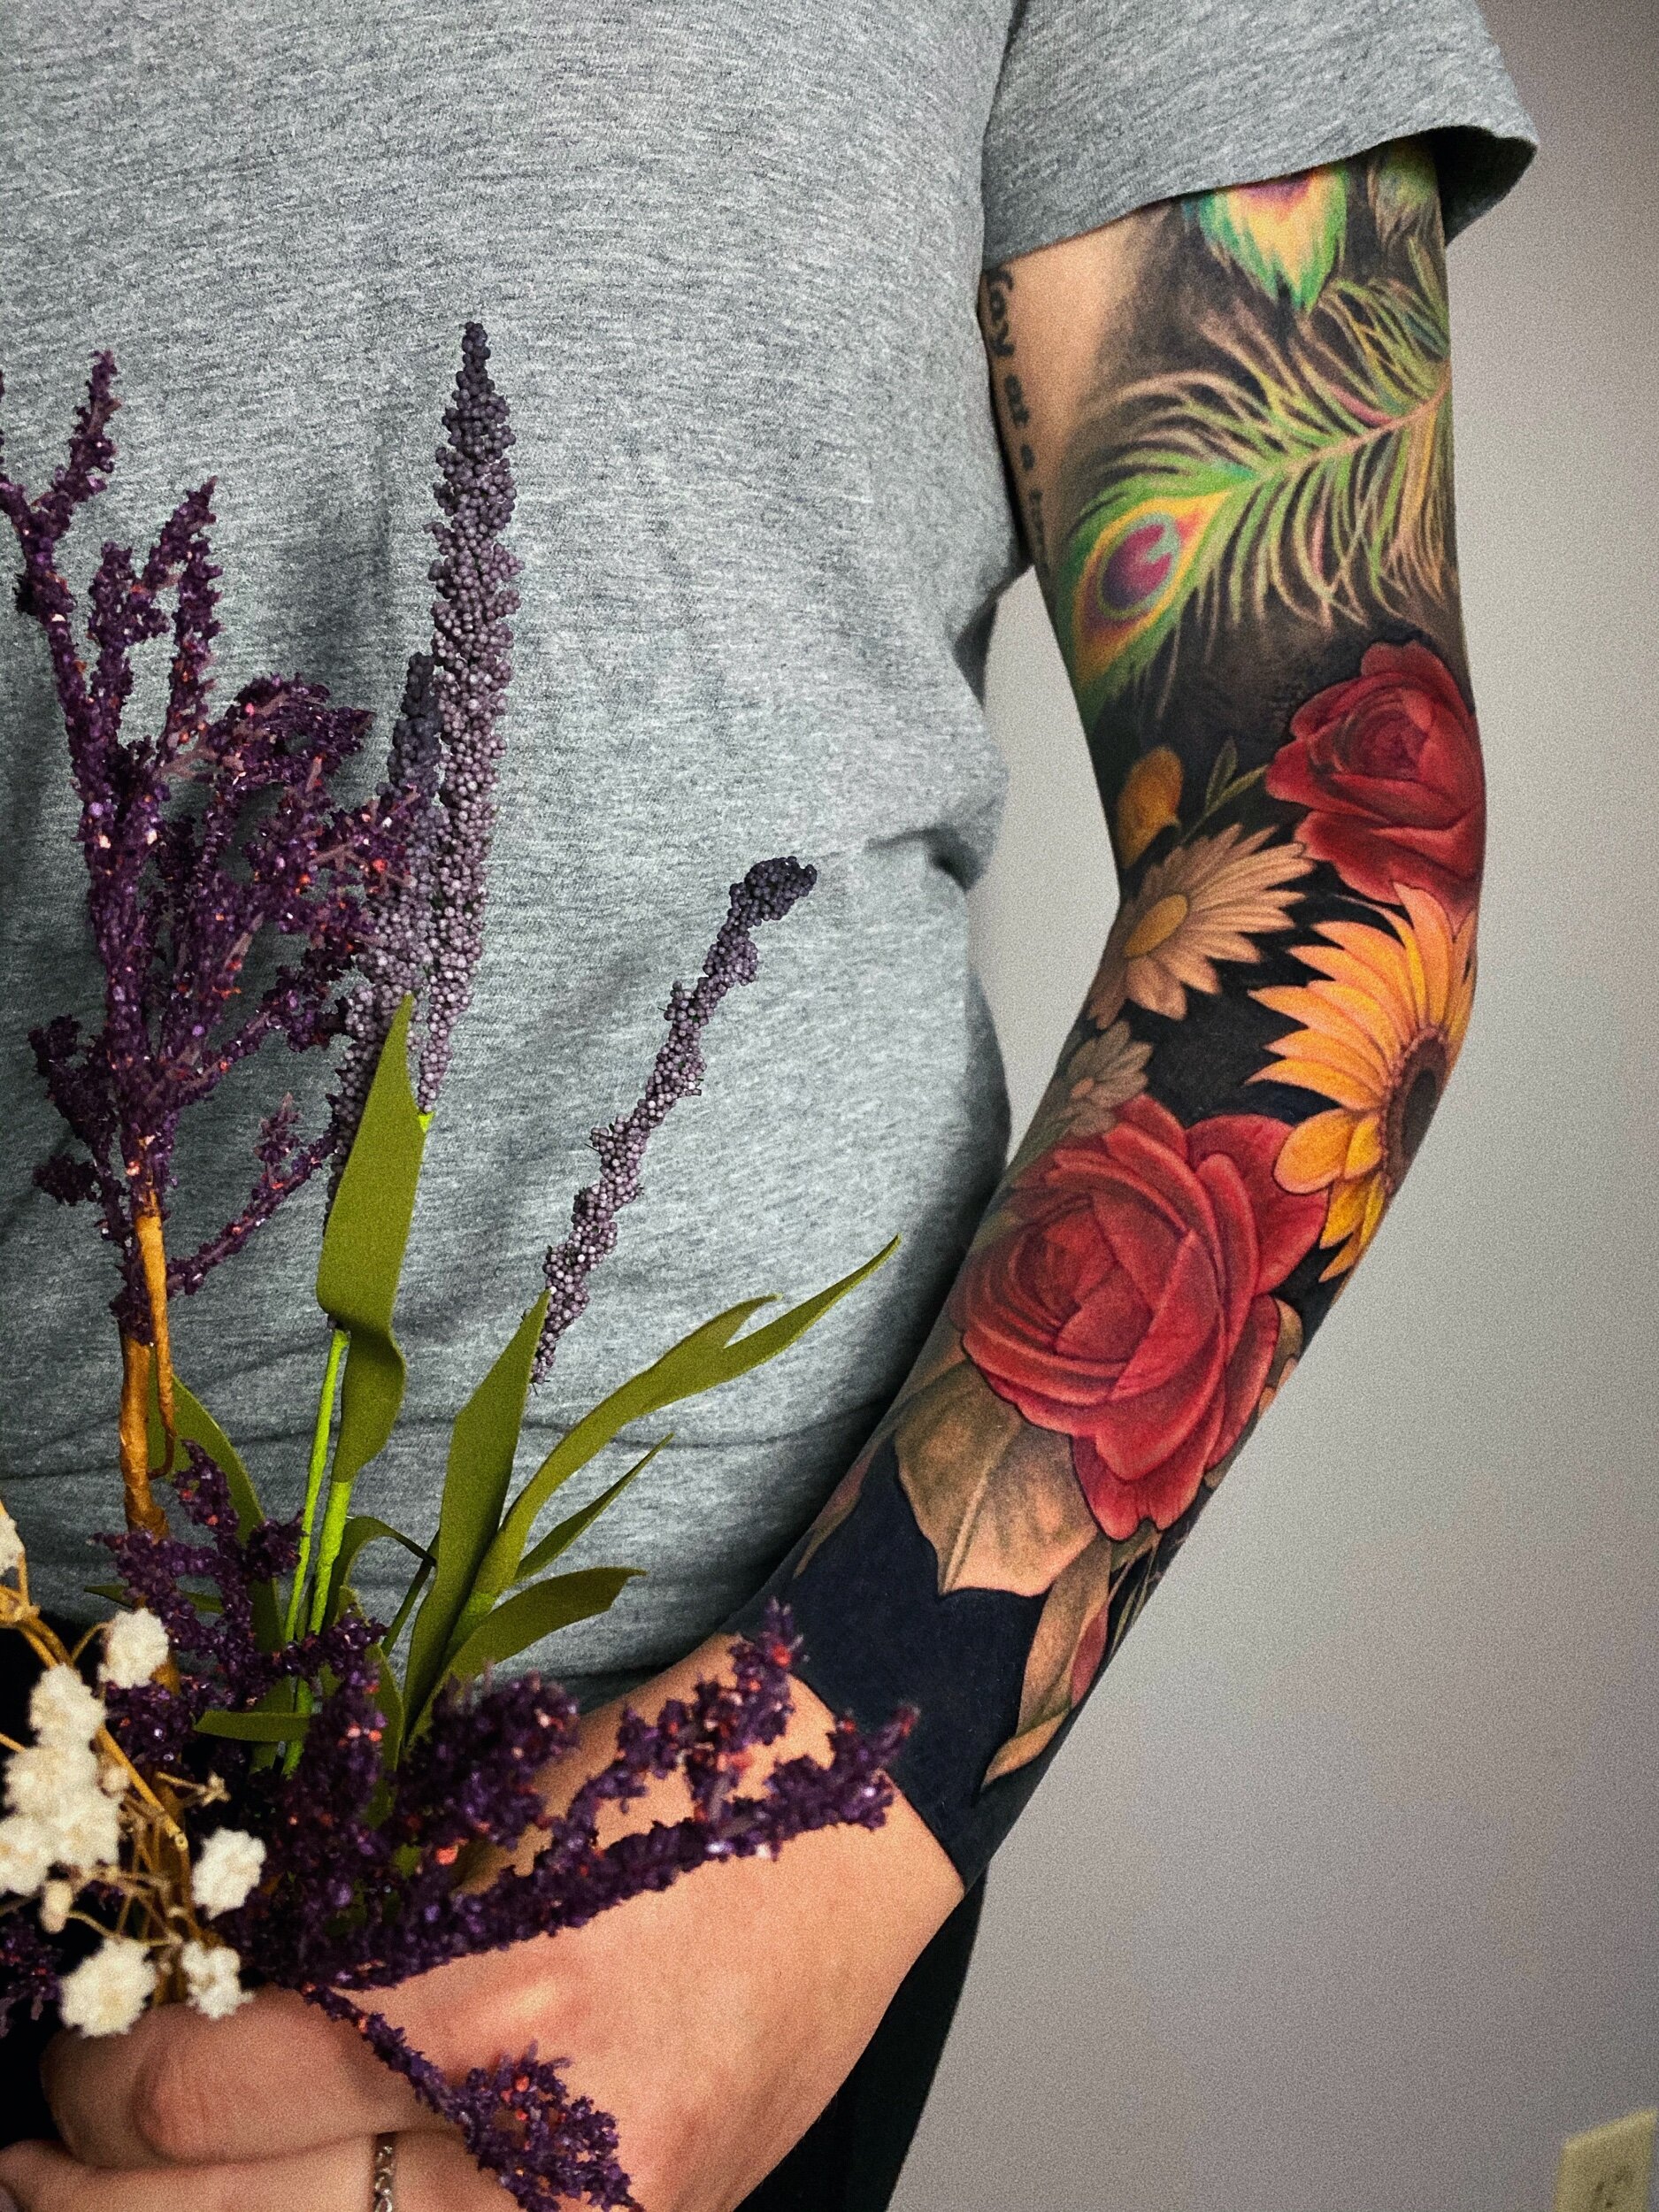 35 Rose Tattoos For Men  Crazy  Unique Ideas  DMARGE